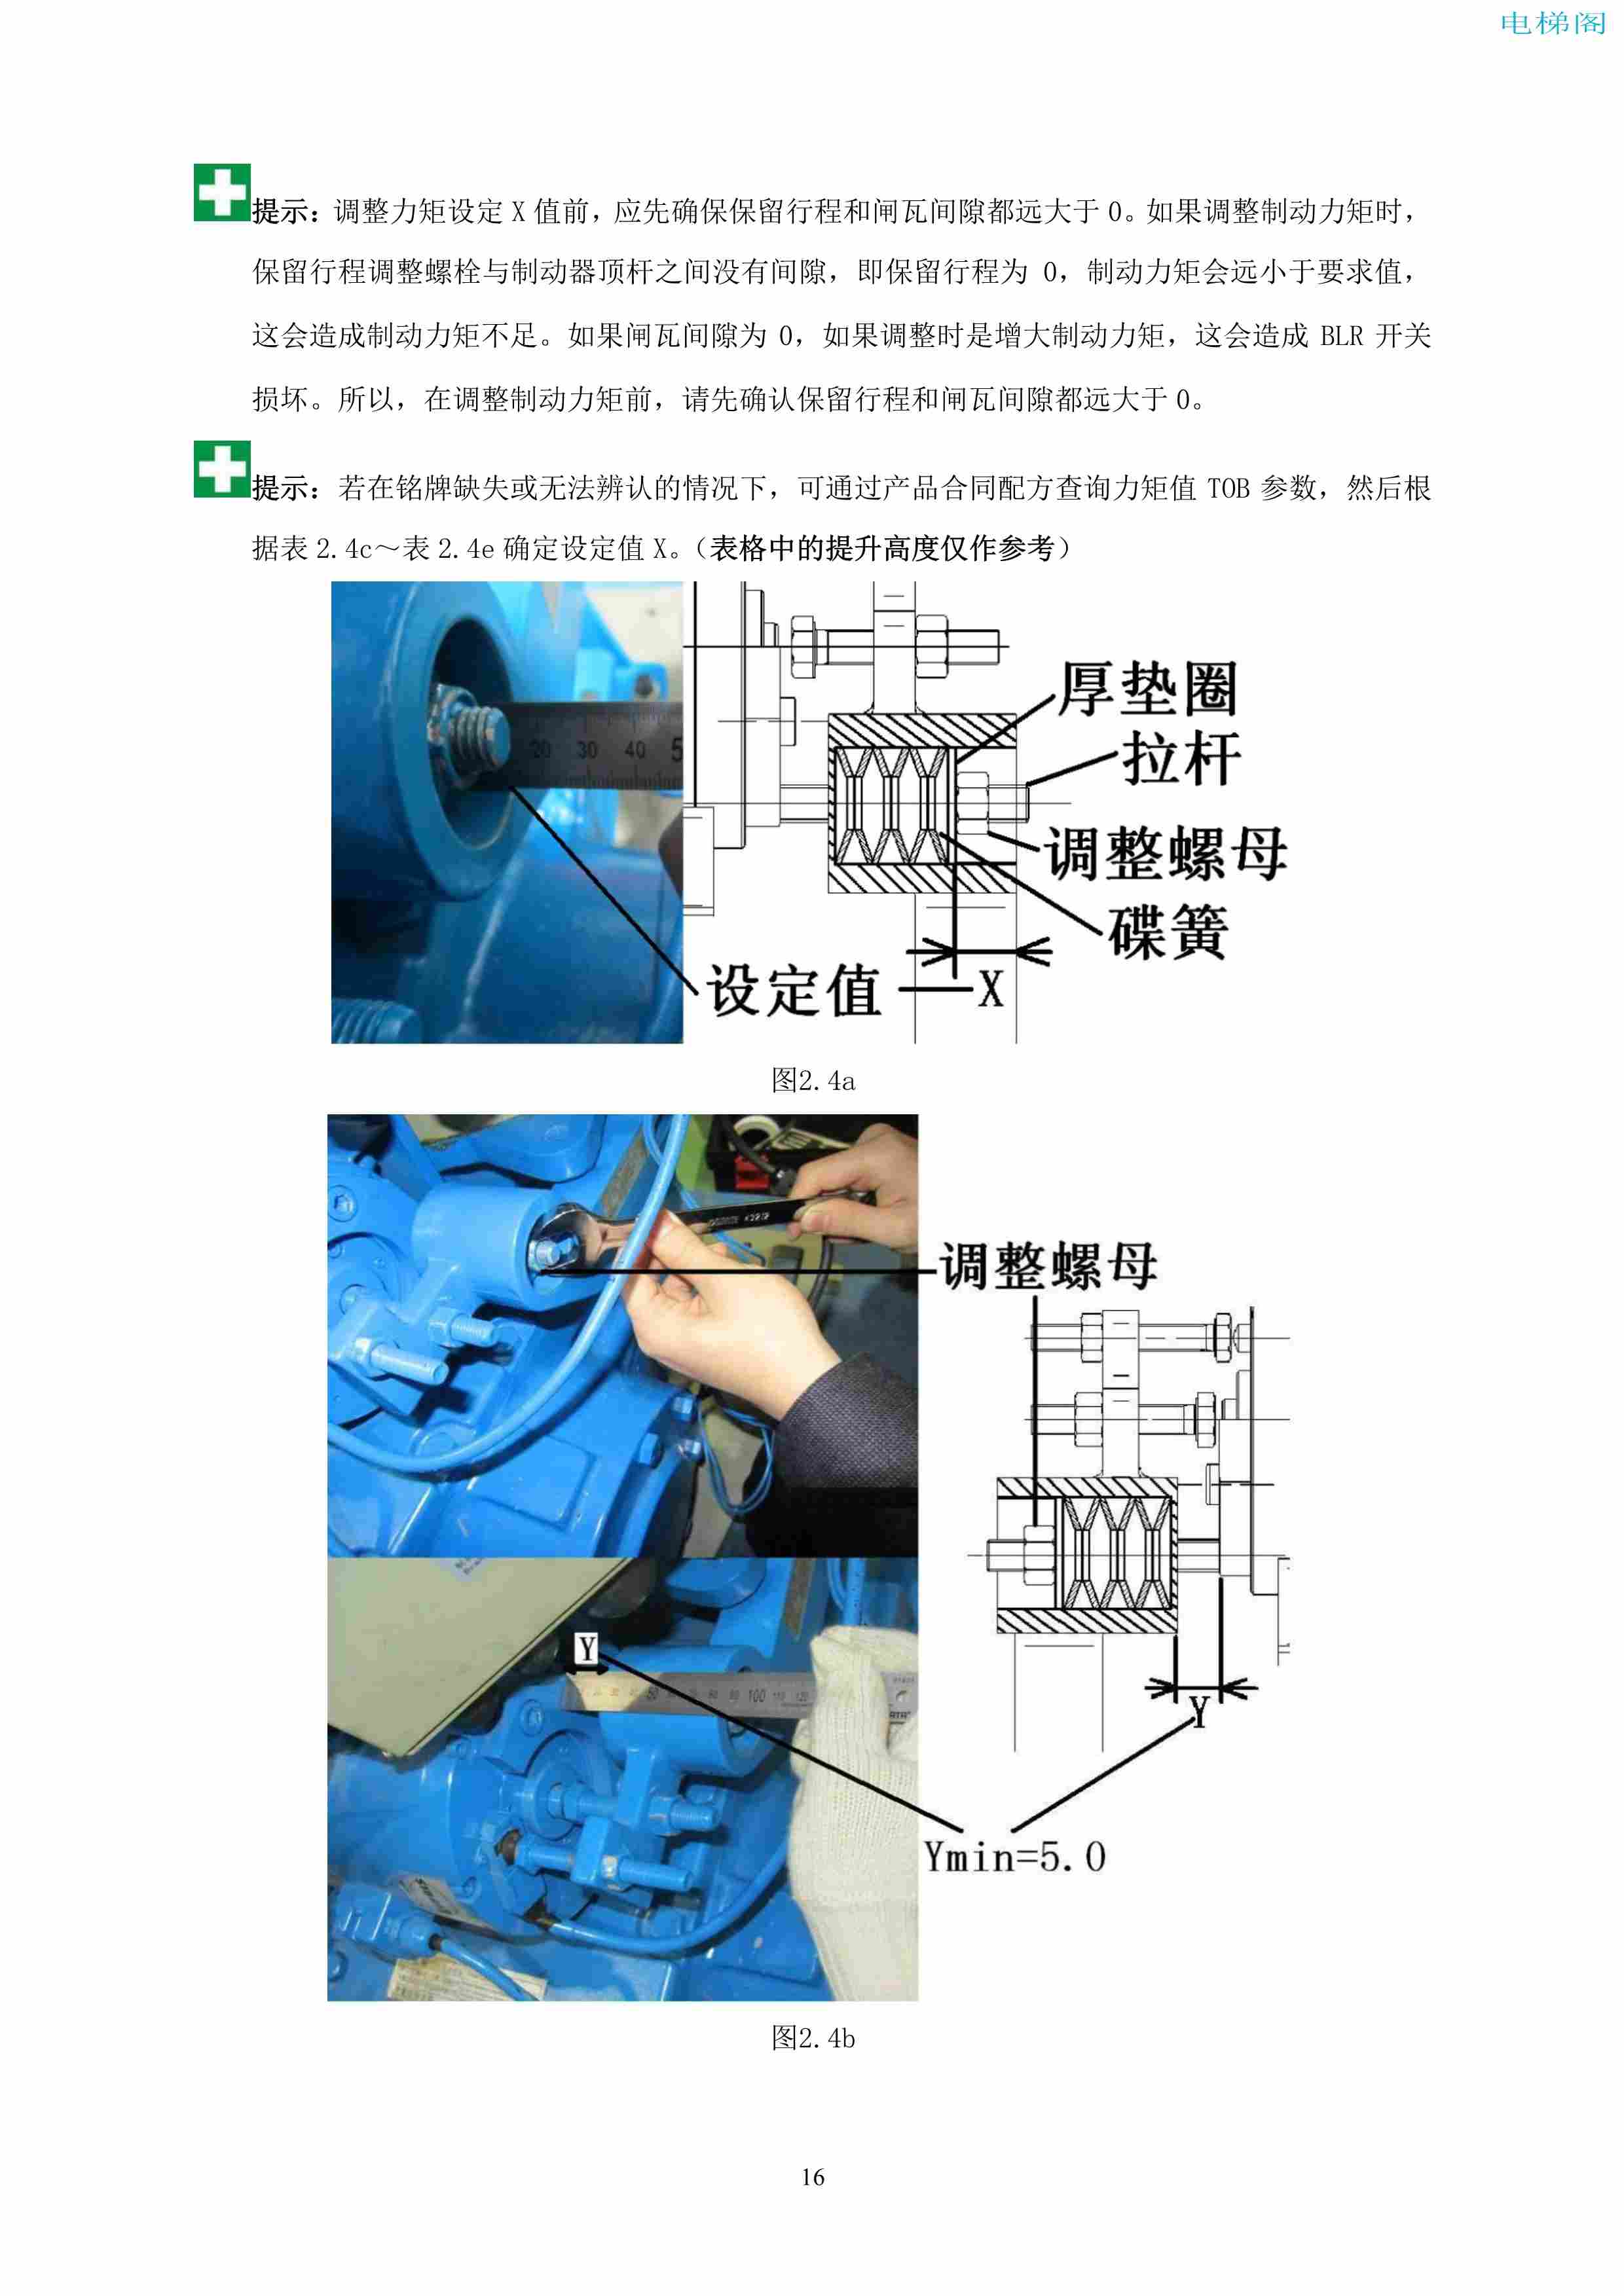 上海三菱电梯有限公司自动扶梯制动器维护作业要领汇编_17.jpg